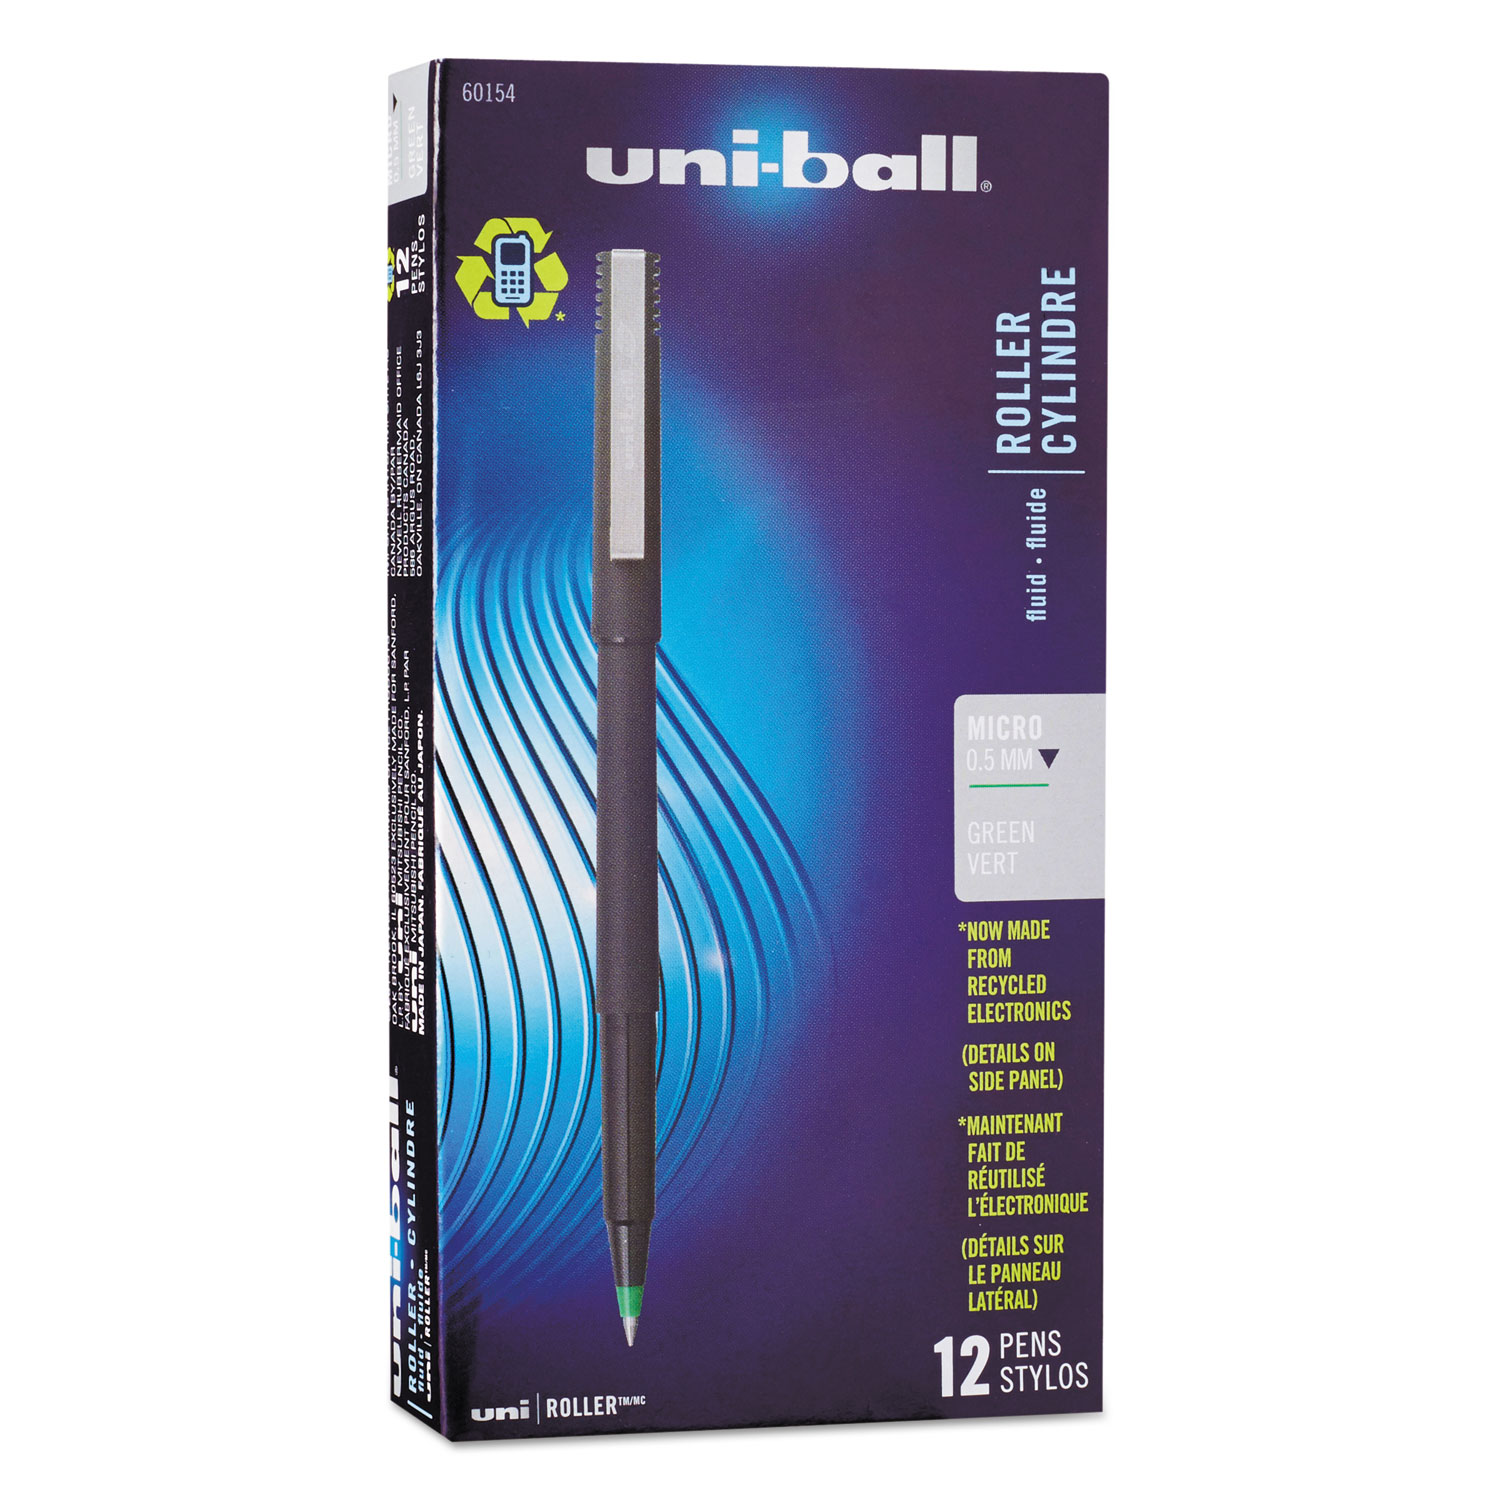  uni-ball 60154 Stick Roller Ball Pen, Micro 0.5mm, Green Ink, Black Matte Barrel, Dozen (UBC60154) 